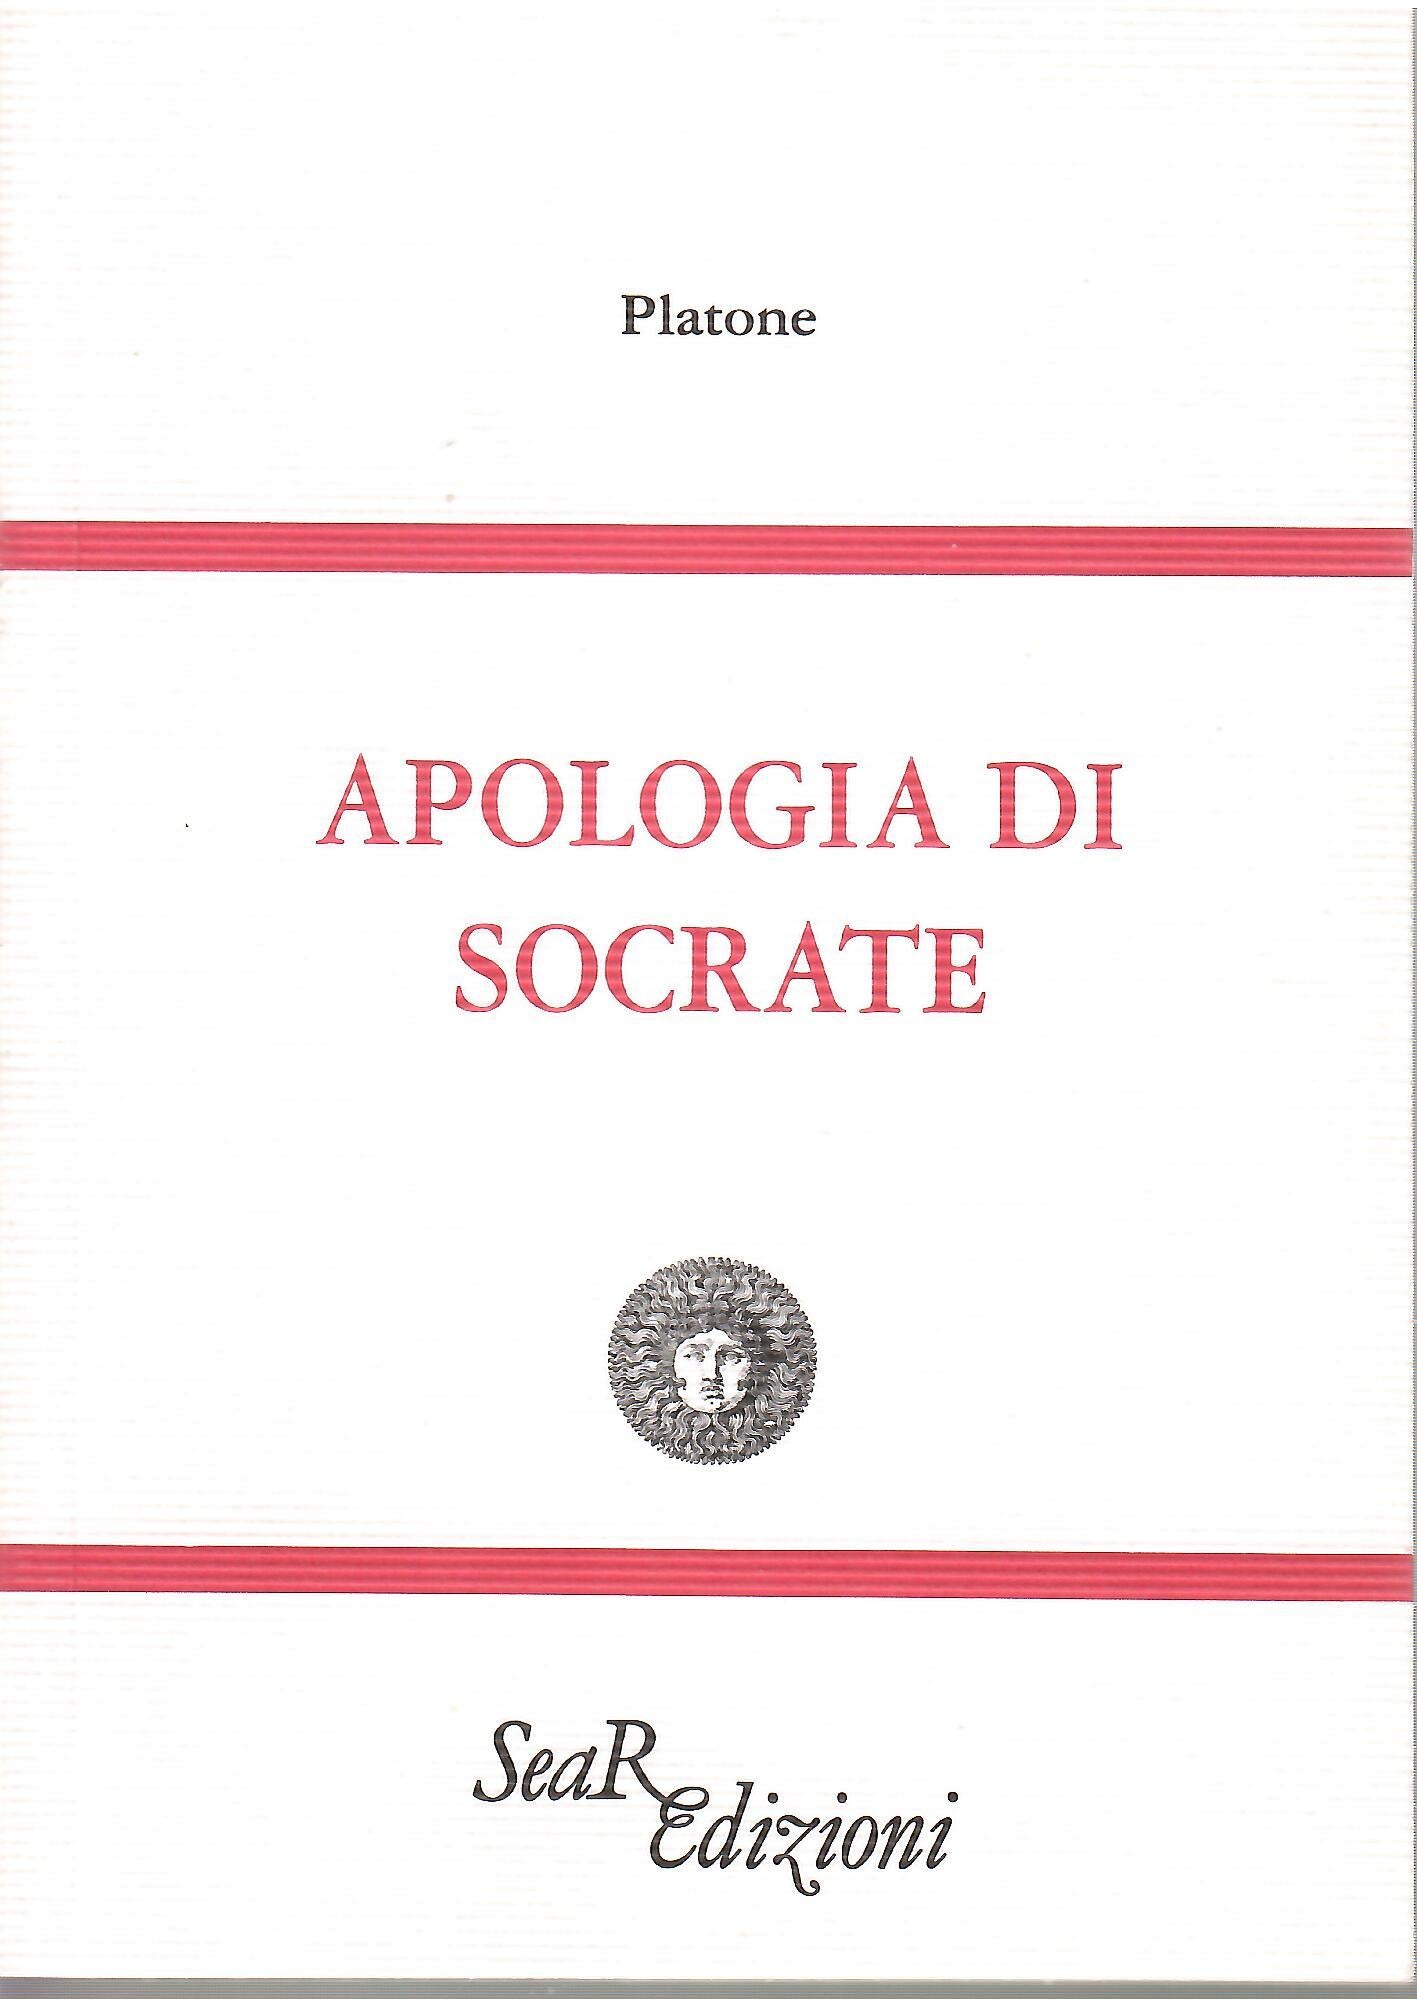 Apologia di Socrate - Platone